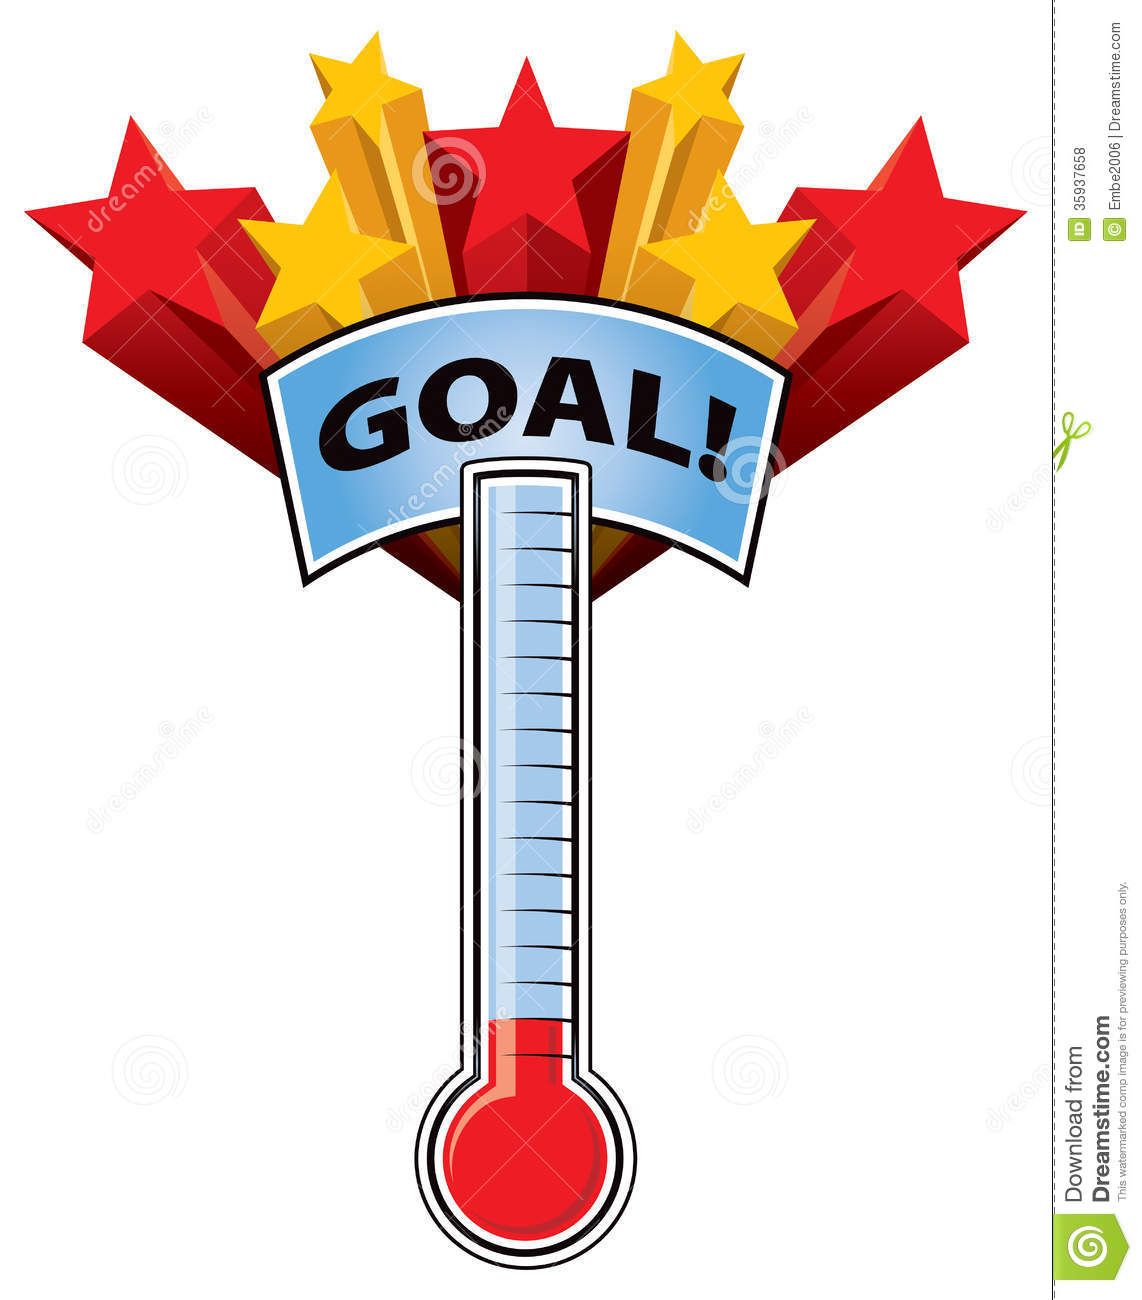 goals clipart goal chart